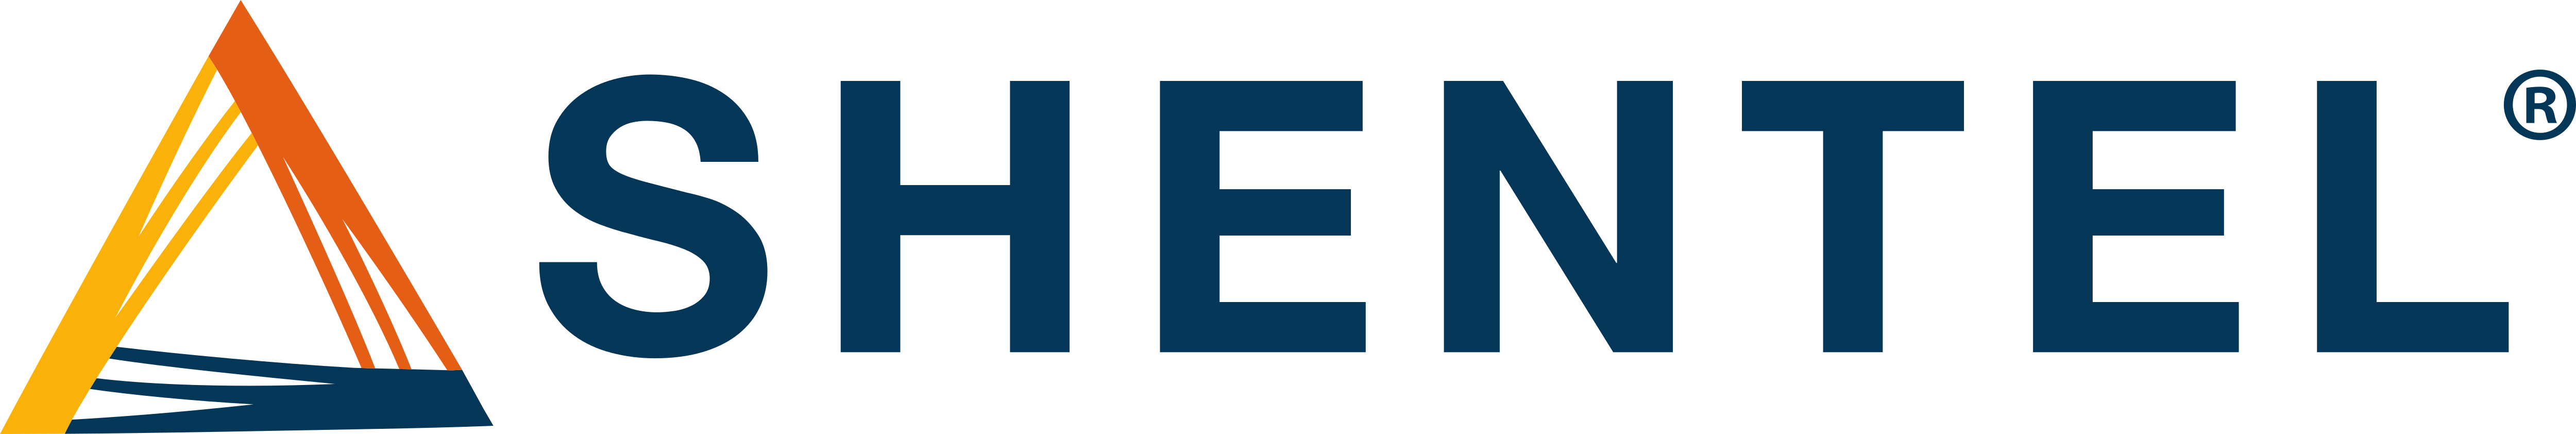 Shentel_Logo